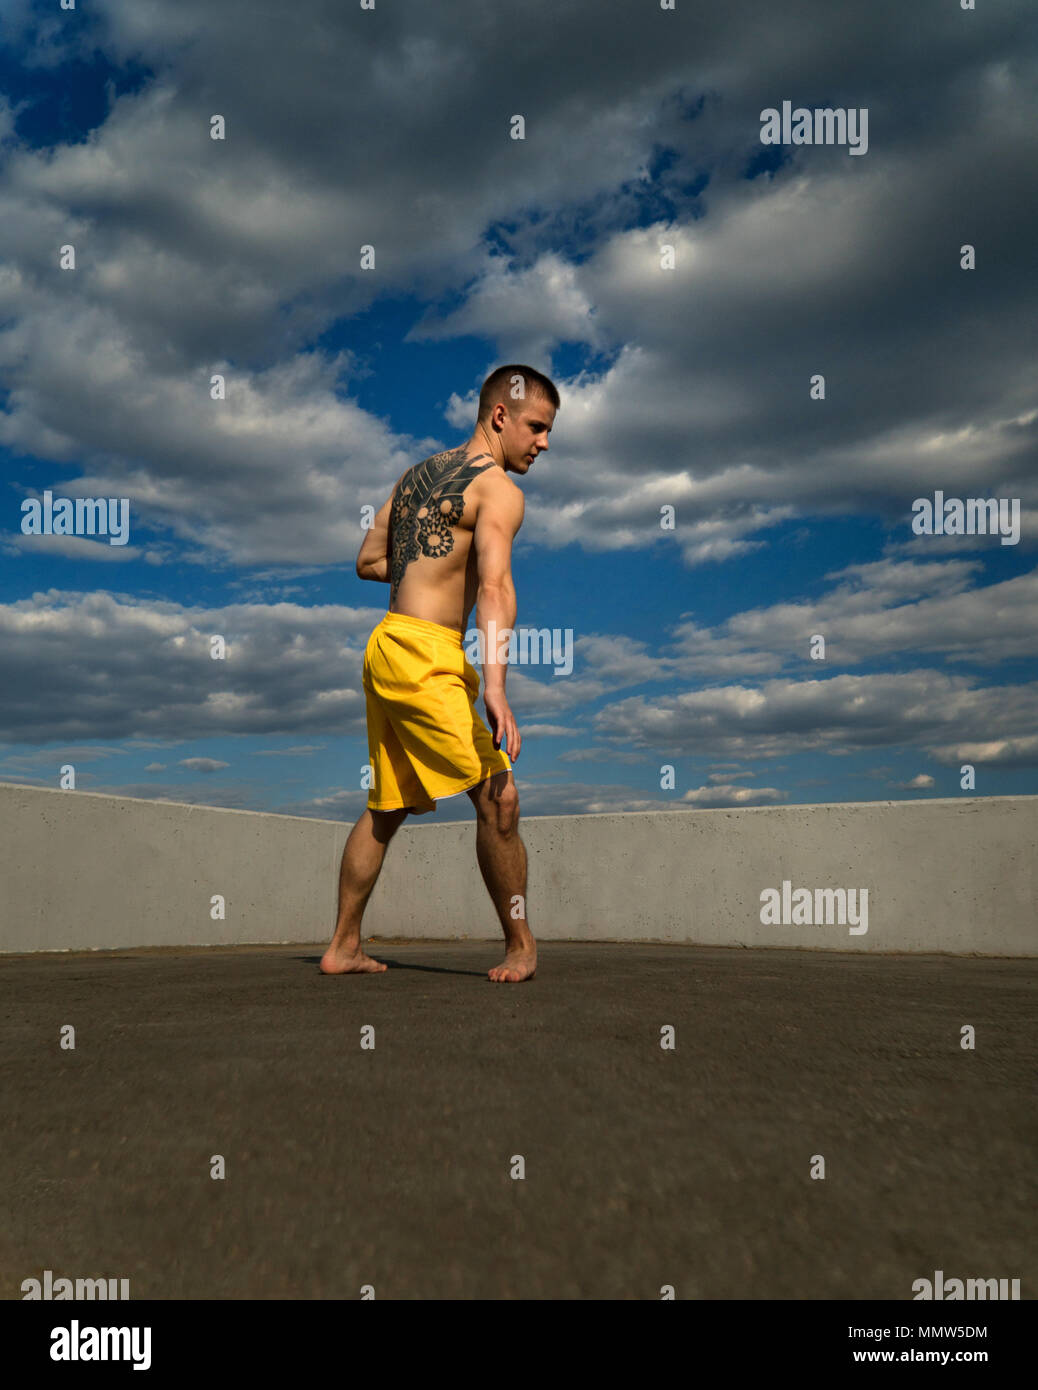 Austrickst, auf die Straße. Kampfsportarten Mann steht in Rack für Roundhouse Kick barfuß. Bhudda Verkürzungen von unten gegen den Himmel. Stockfoto